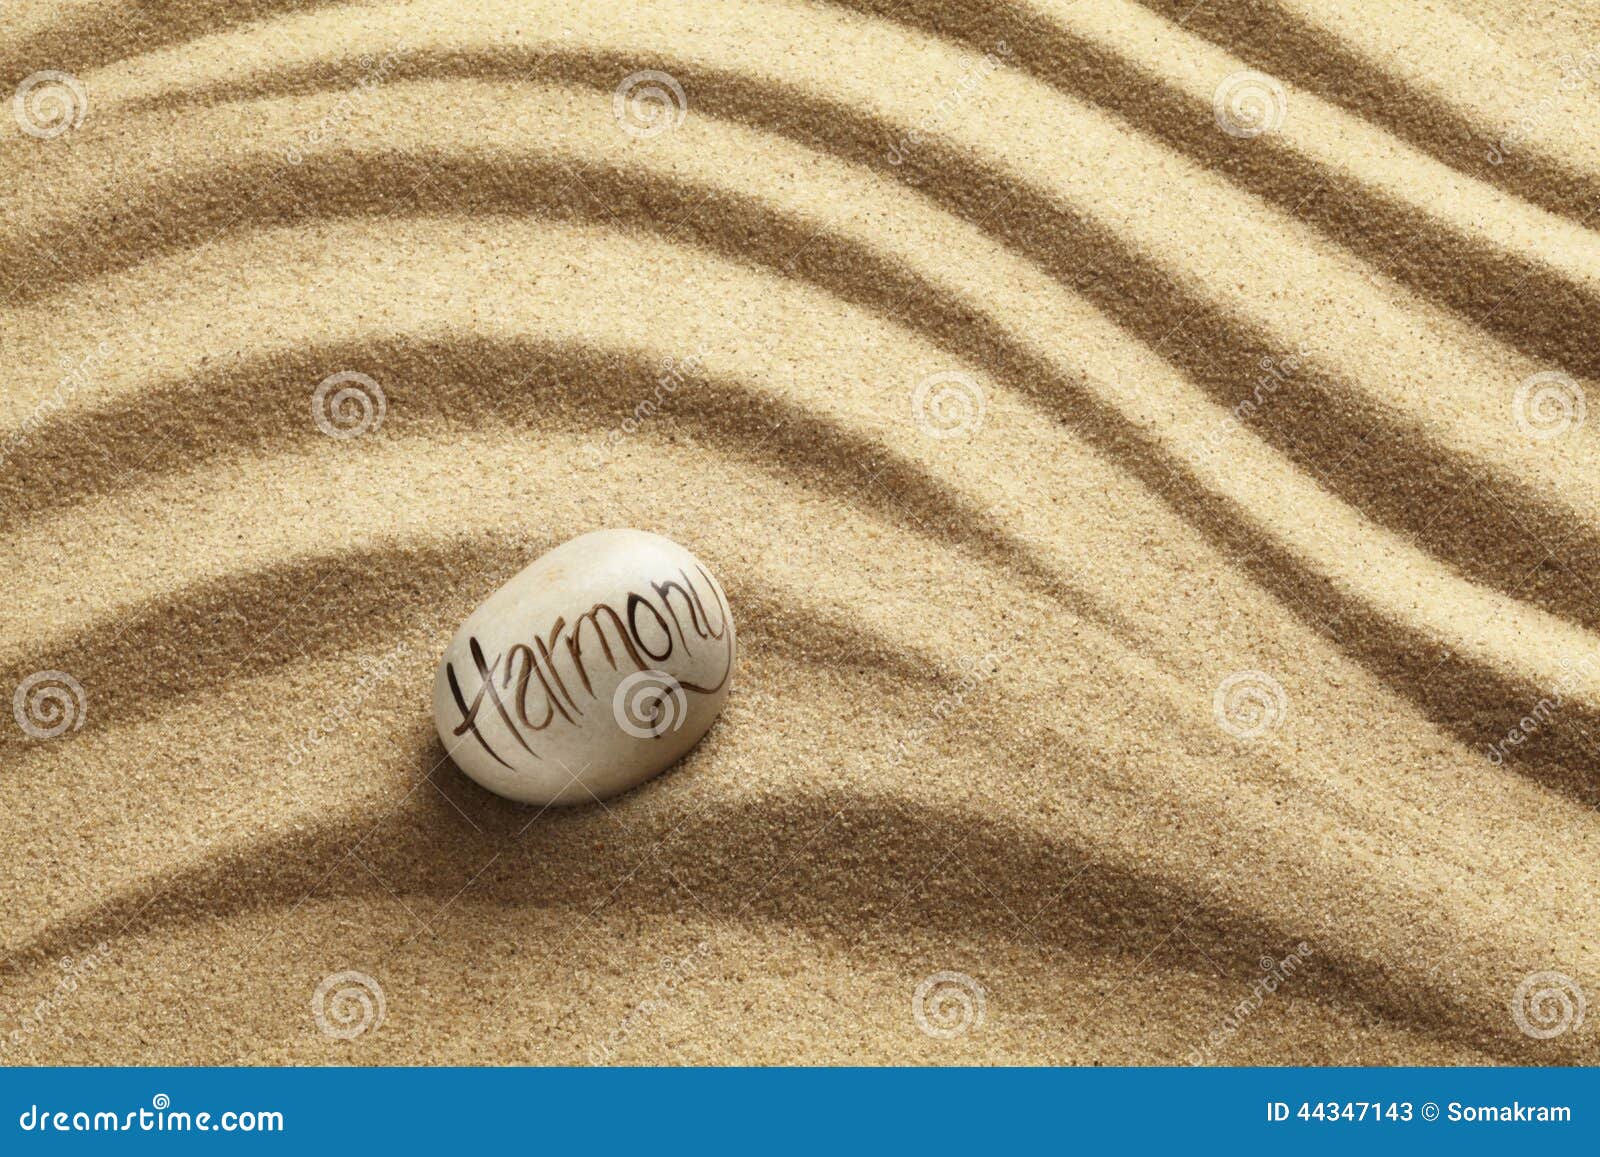 harmony pebble on sand